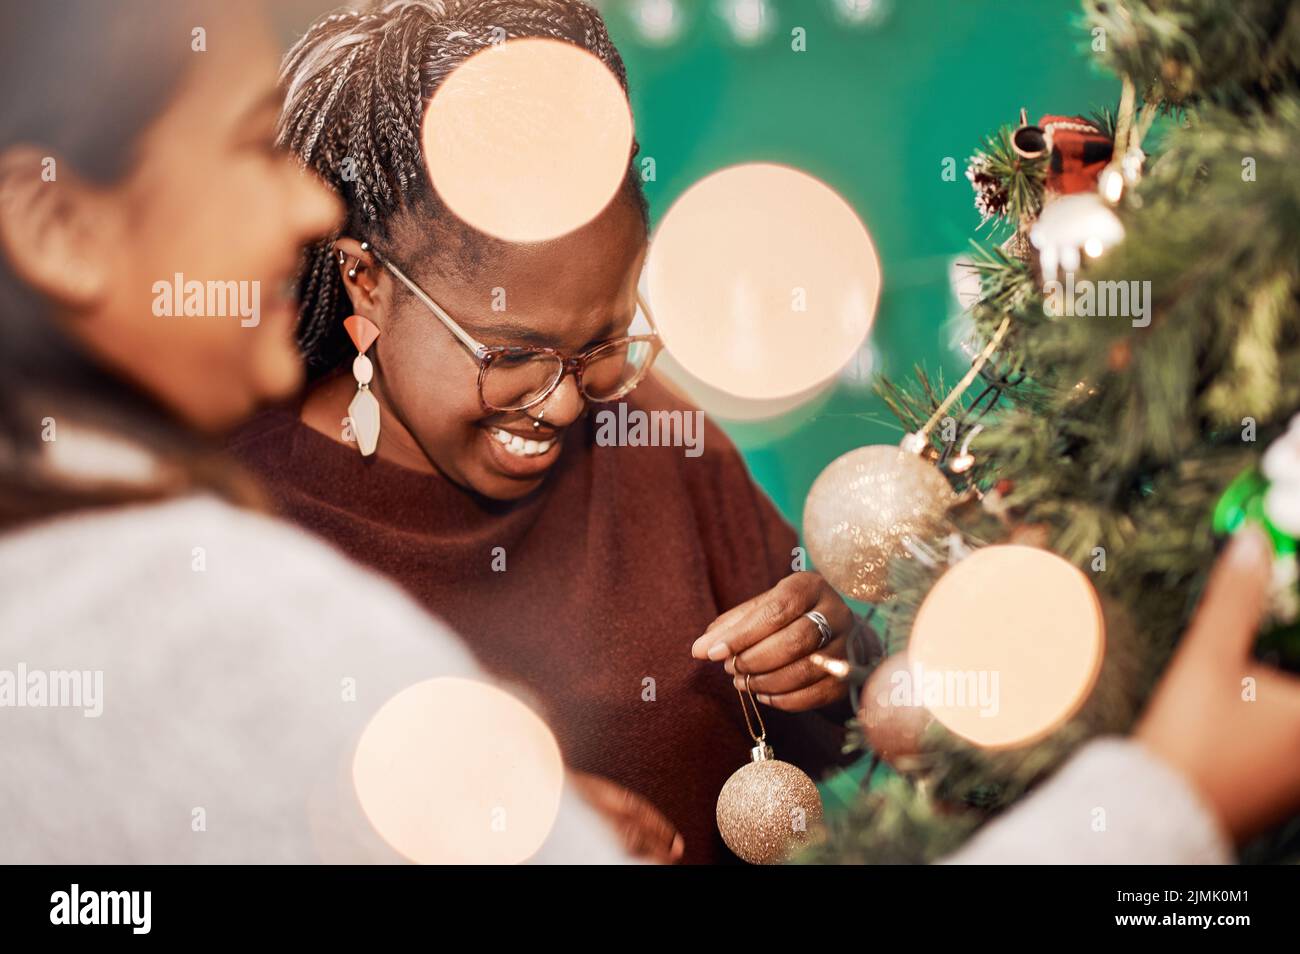 Die festliche Jahreszeit ist offiziell eröffnet. Zwei junge Frauen schmücken zu Hause einen Weihnachtsbaum. Stockfoto